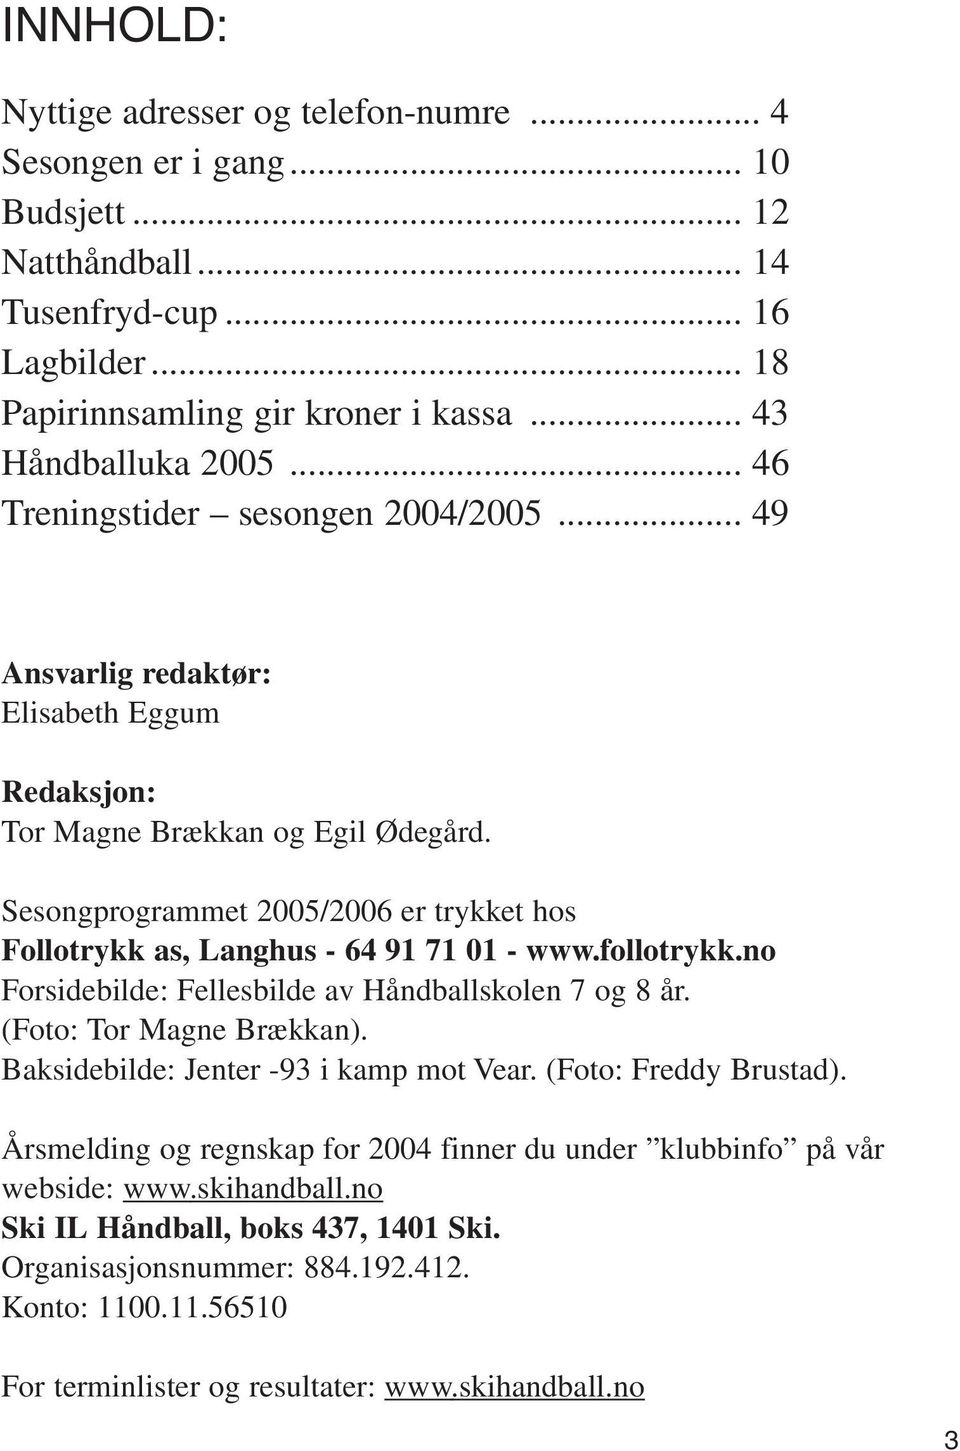 Sesongprogrammet 2005/2006 er trykket hos Follotrykk as, Langhus - 64 91 71 01 - www.follotrykk.no Forsidebilde: Fellesbilde av Håndballskolen 7 og 8 år. (Foto: Tor Magne Brækkan).